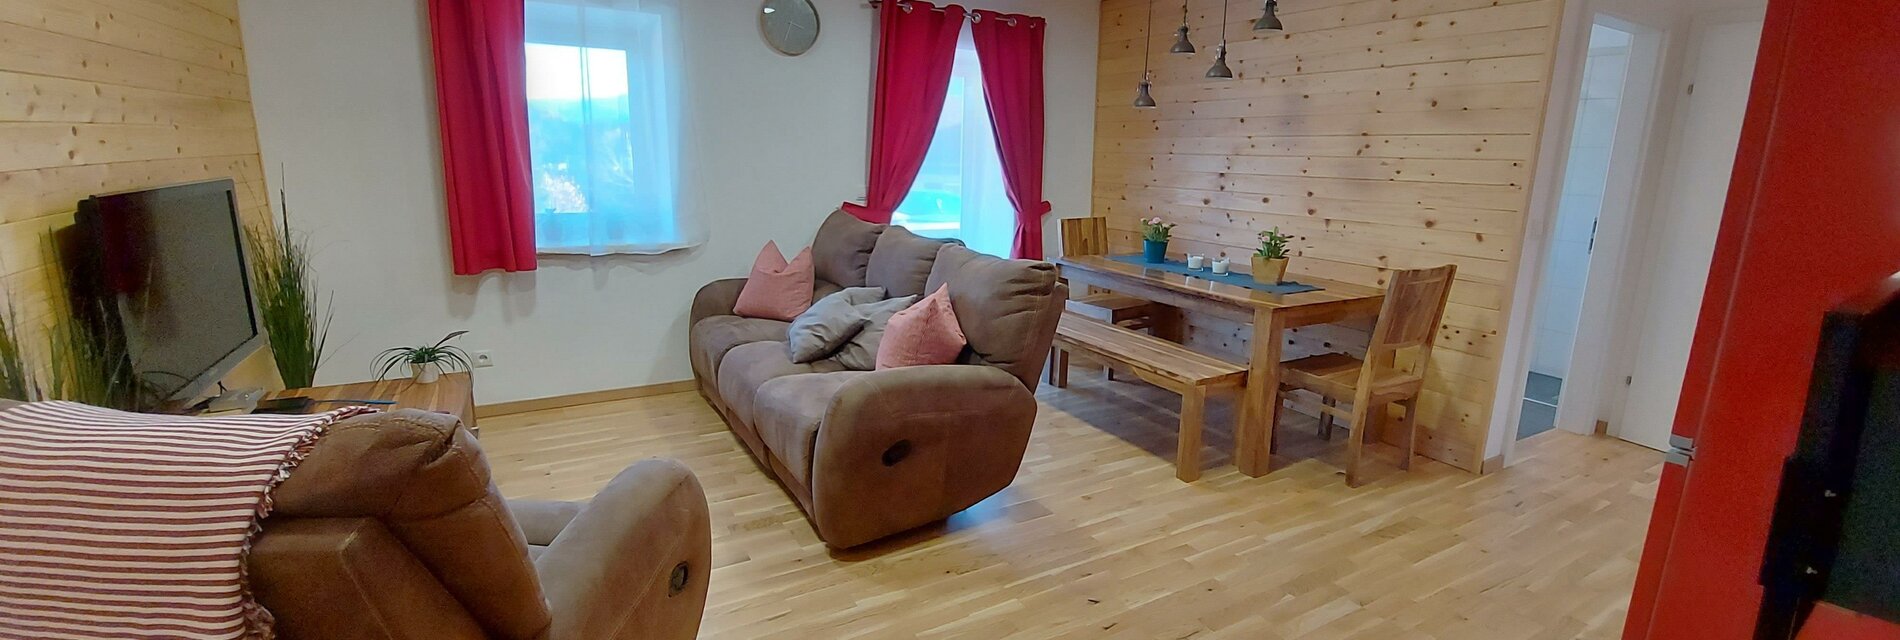 Wohnraum Küchenzeile TV Couch Essbereich